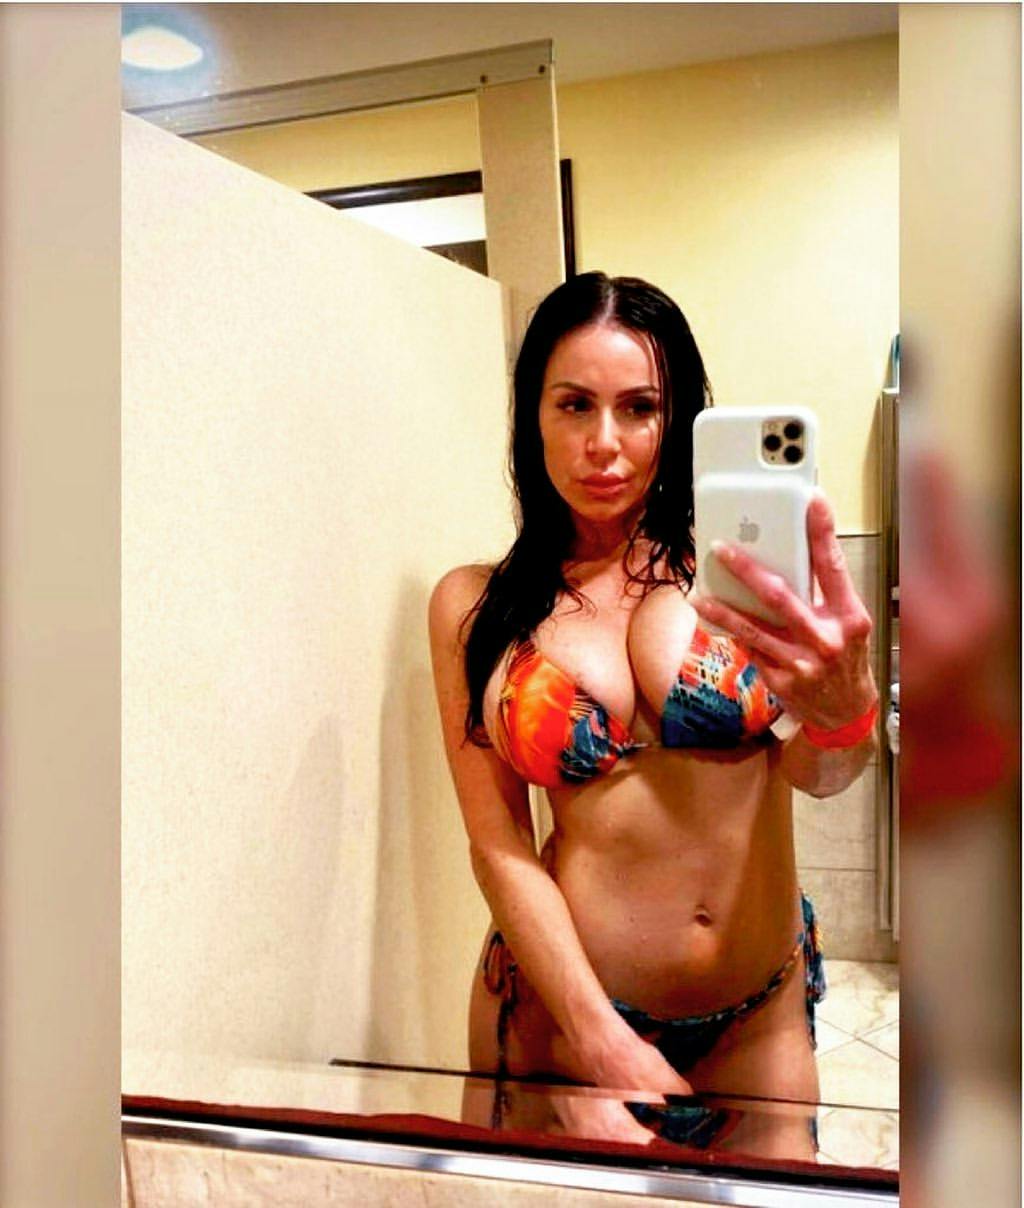 Adult star Kendra Lust wearing a patterned bikini taking a mirror selfie.